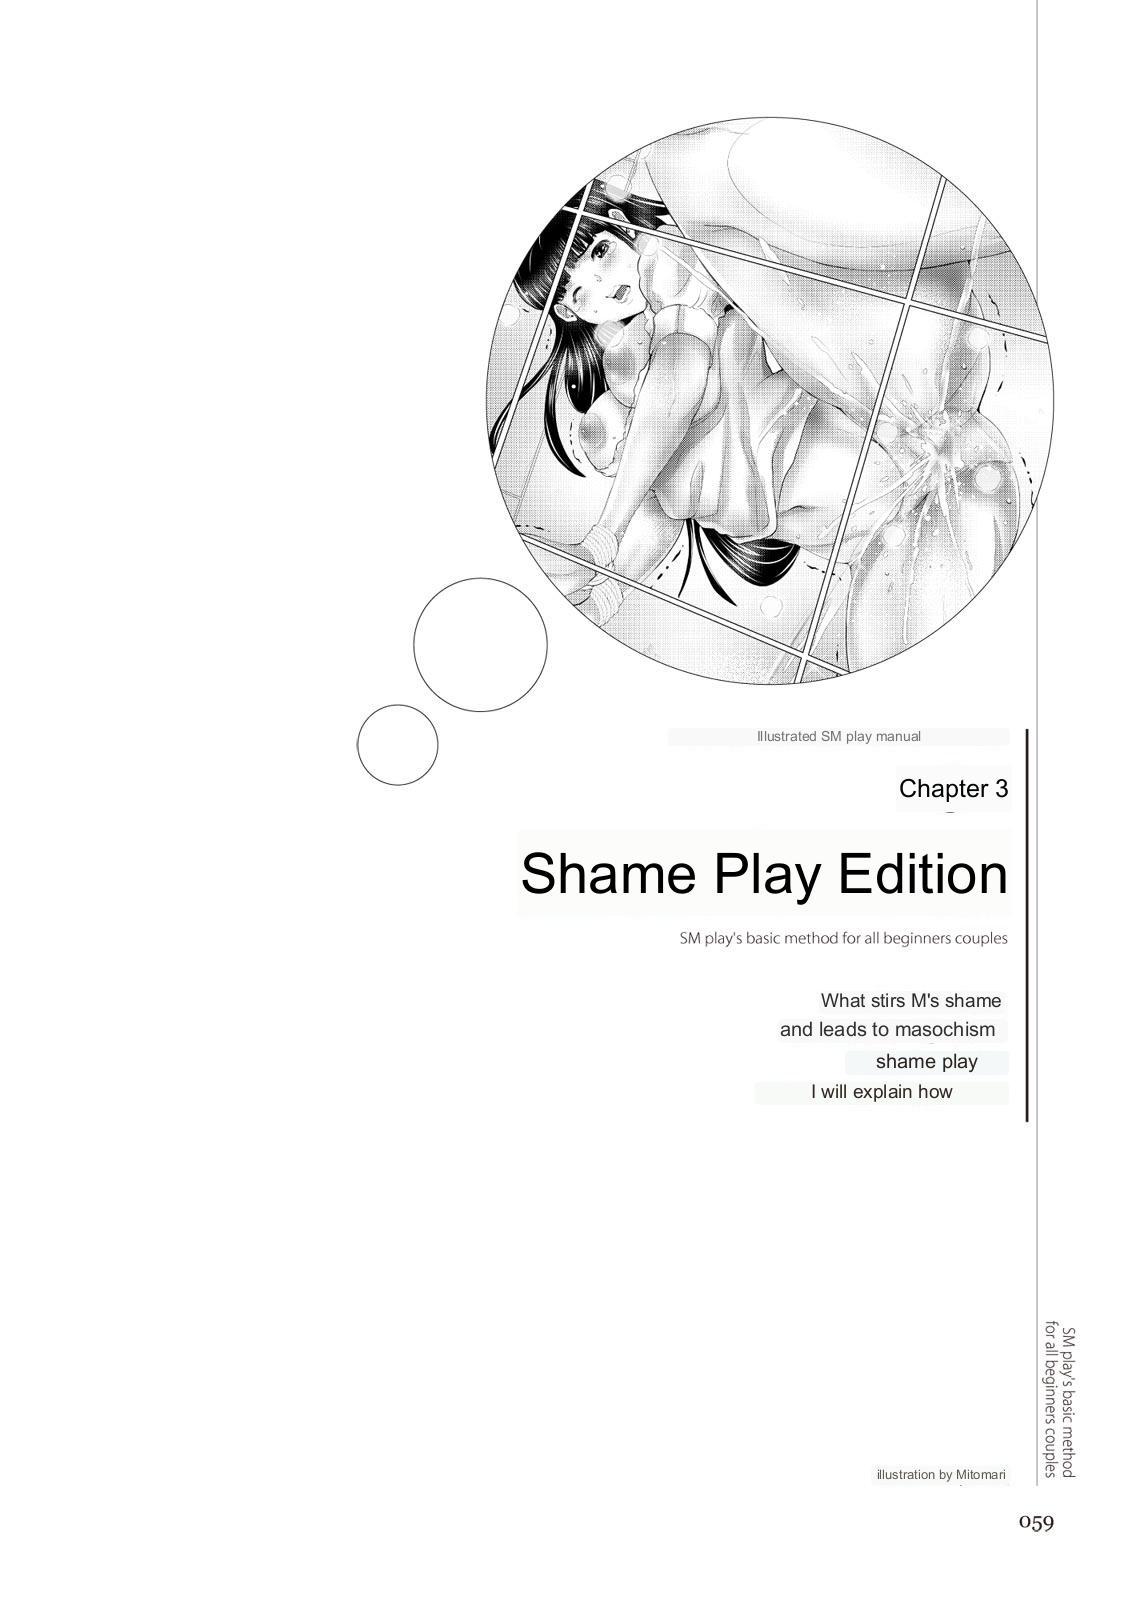 SM play manual 56